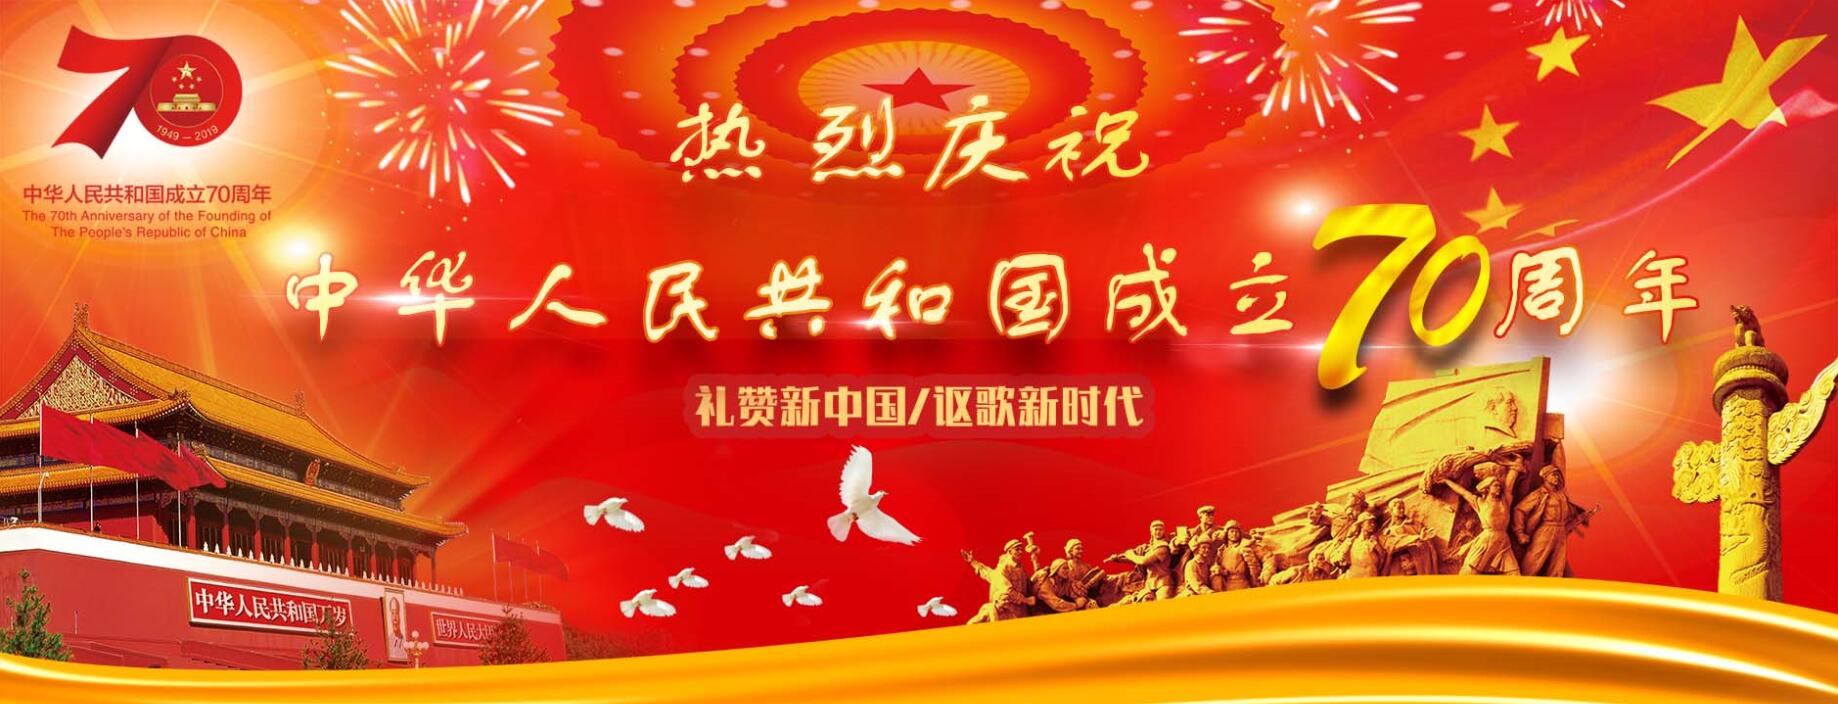 热烈庆祝中华人民共和国成立70周